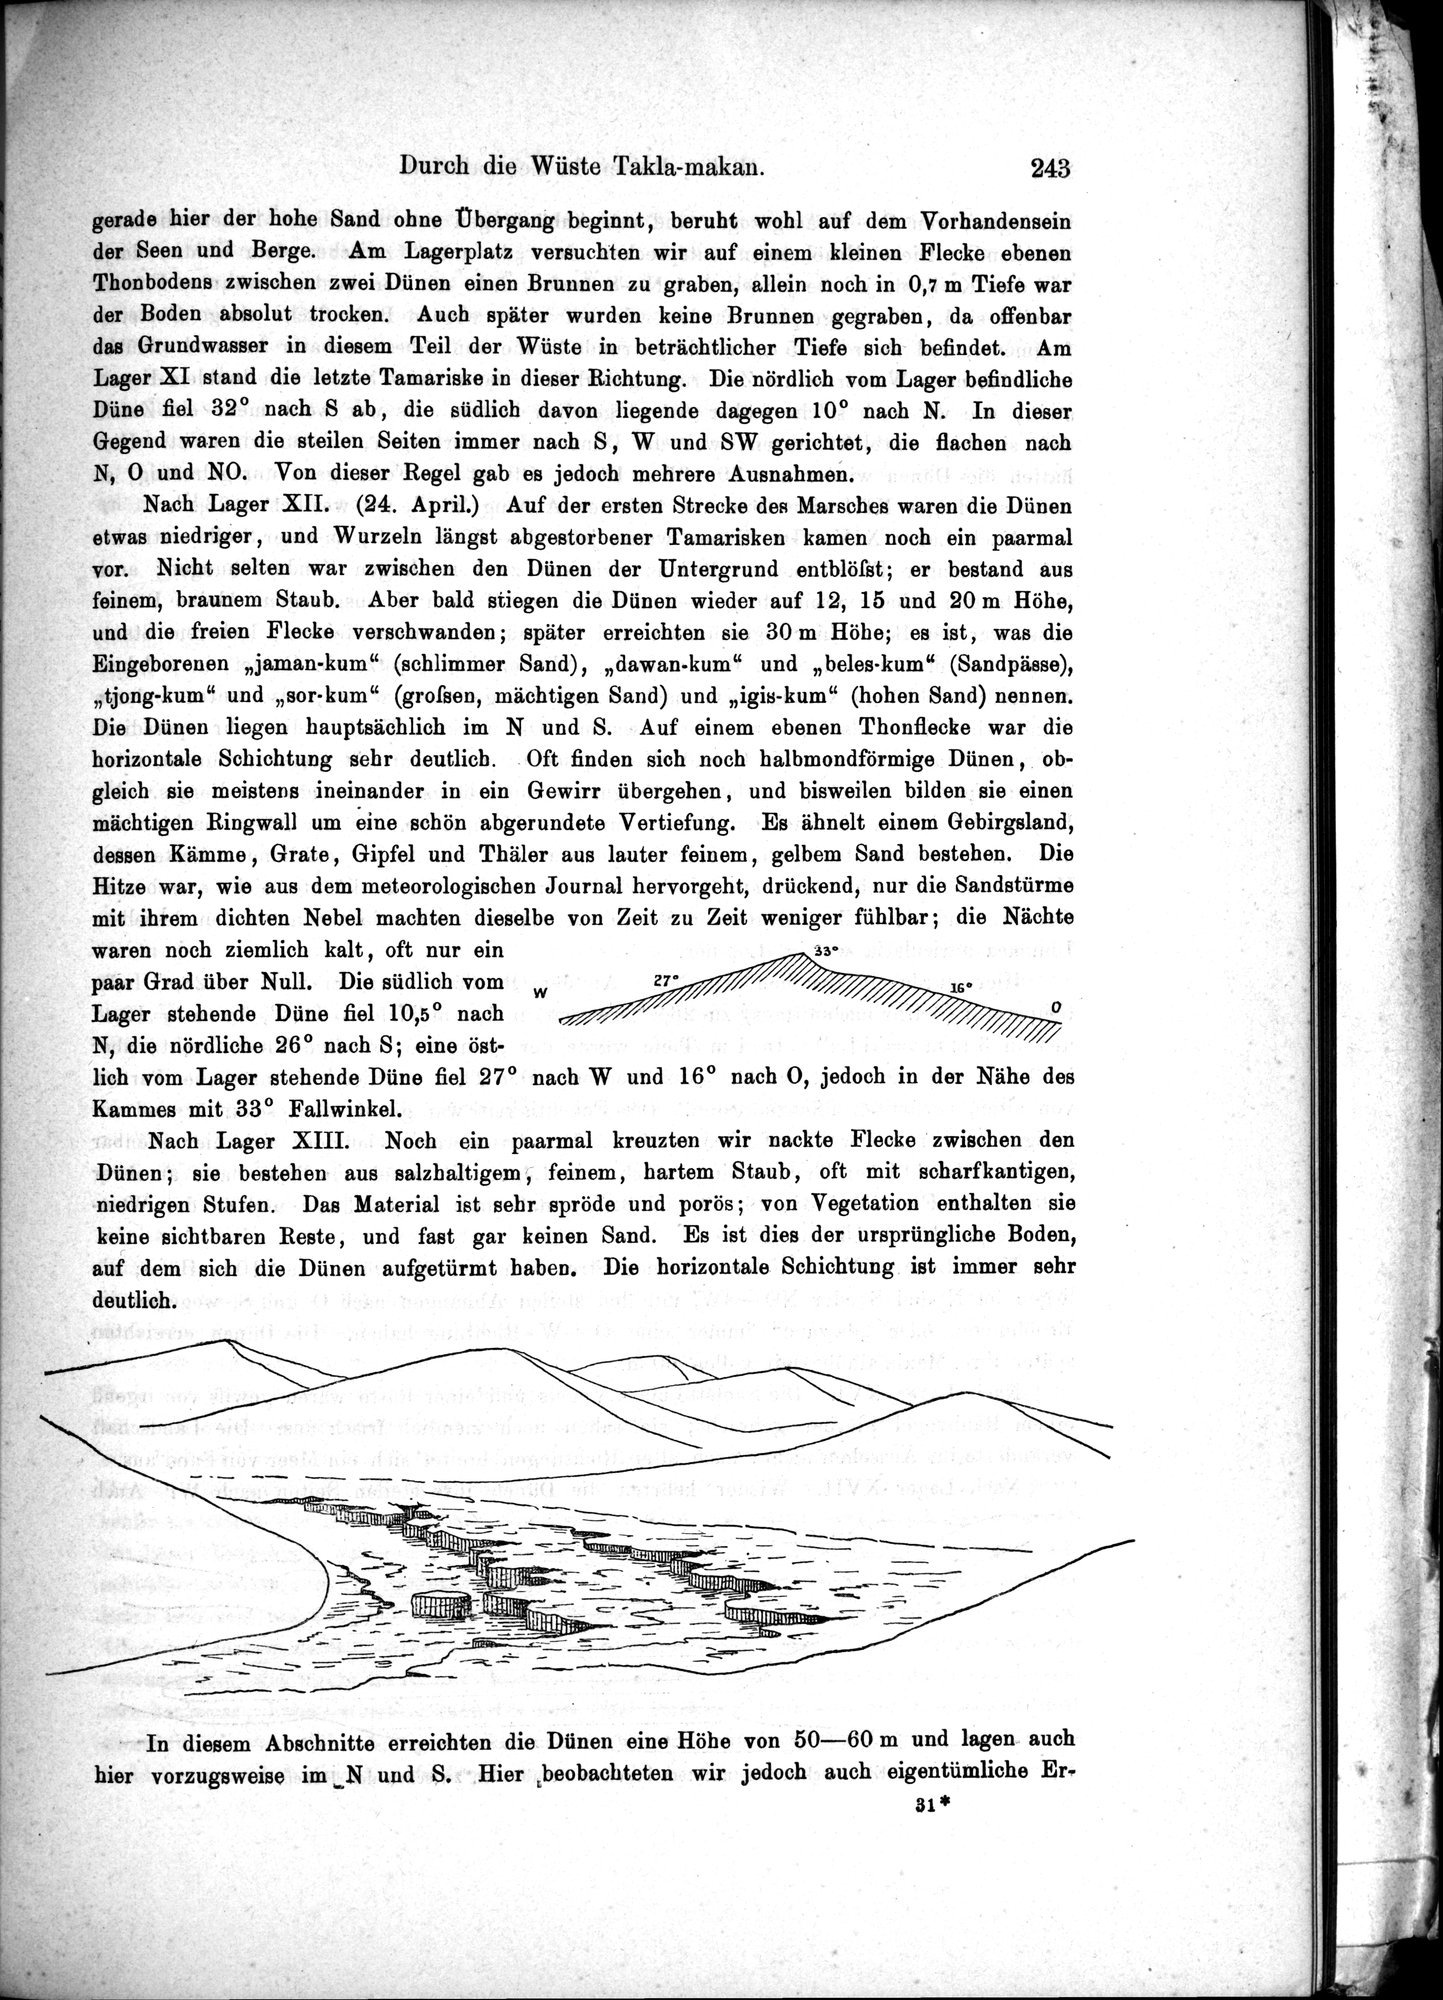 Die Geographische-Wissenschaftlichen Ergebnisse meiner Reisen in Zentralasien, 1894-1897 : vol.1 / Page 255 (Grayscale High Resolution Image)